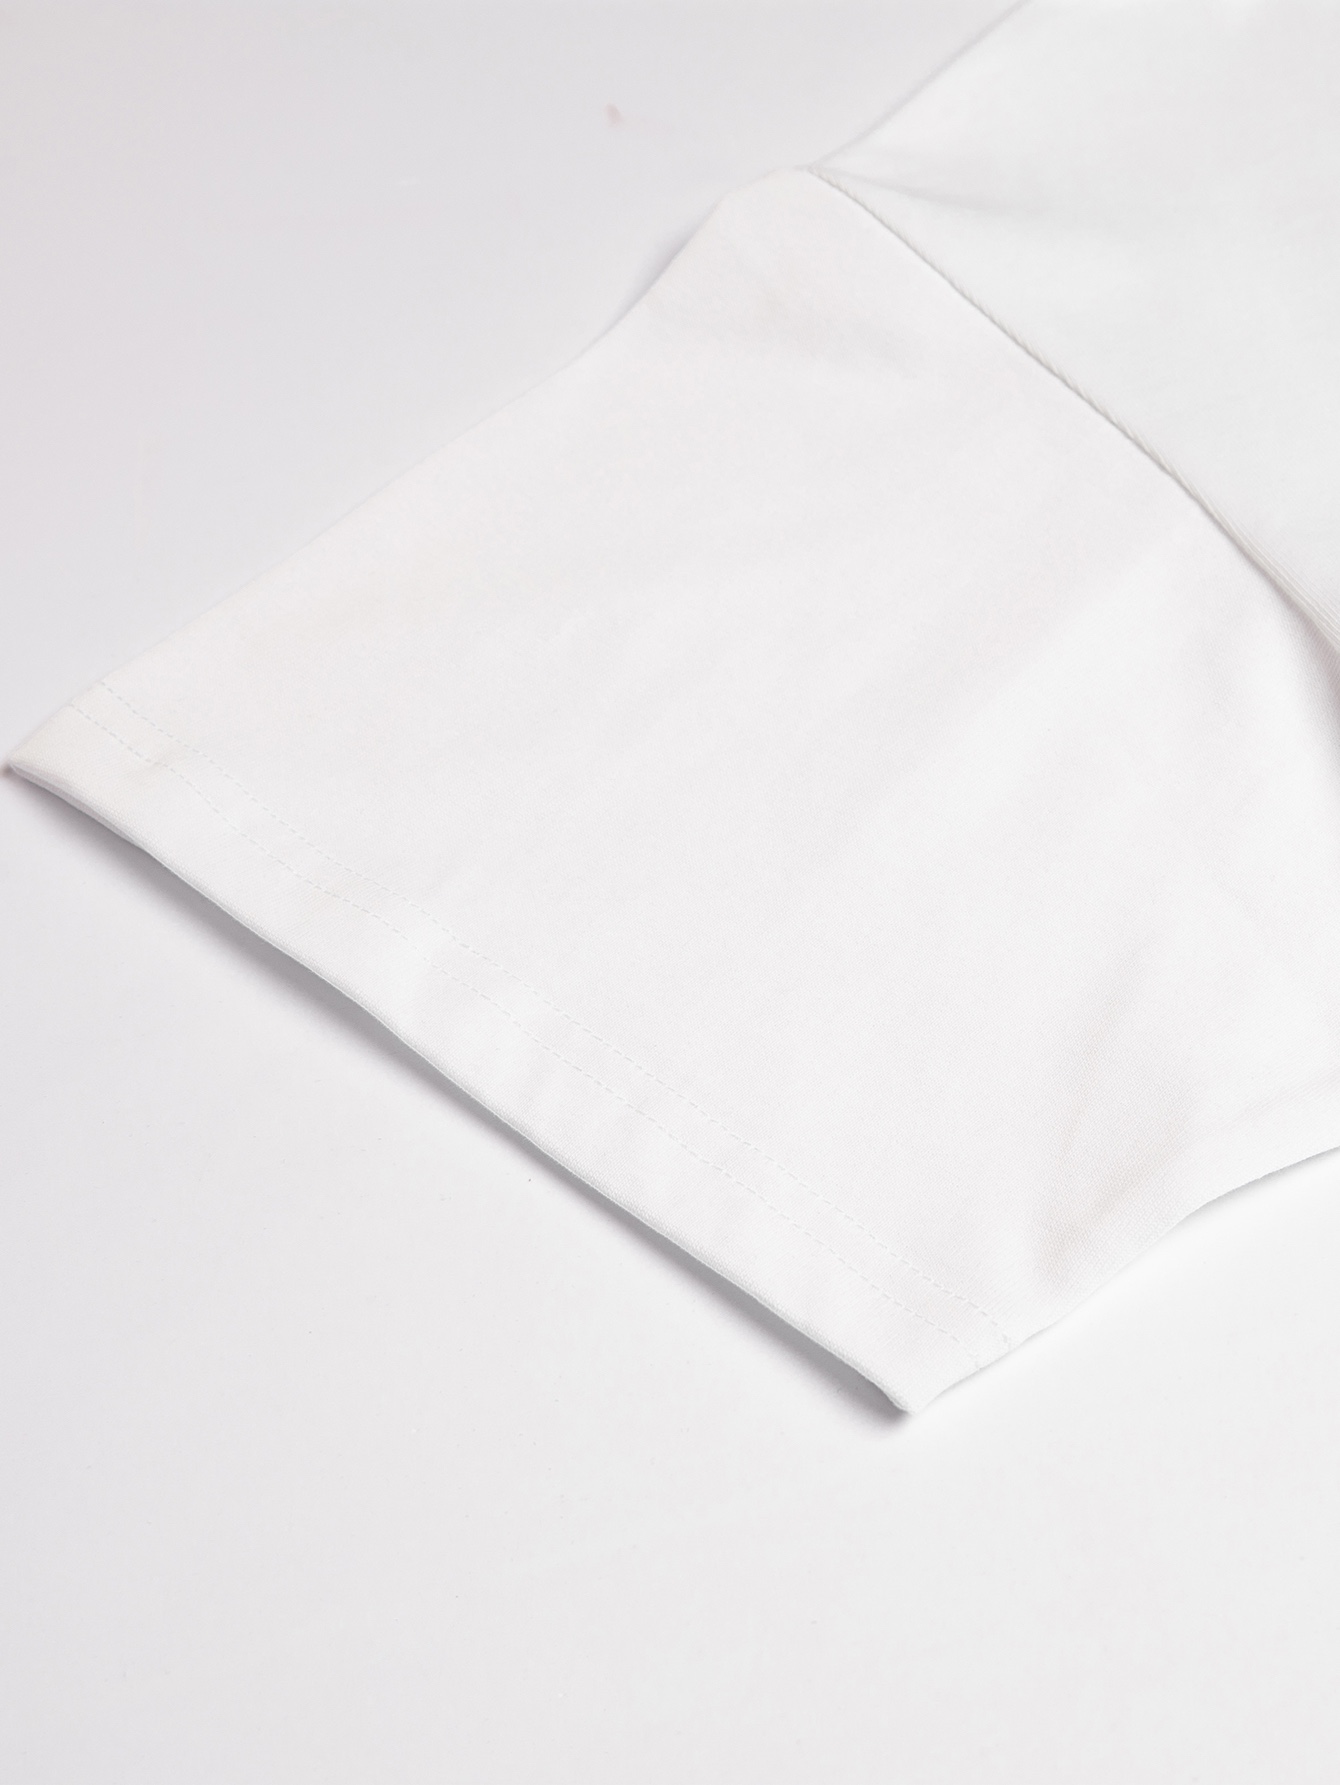 fendi fila t シャツ偽物 トップス 綿100% 短袖 Tシャツ 男女兼用 シンプル ファッション ホワイト_6